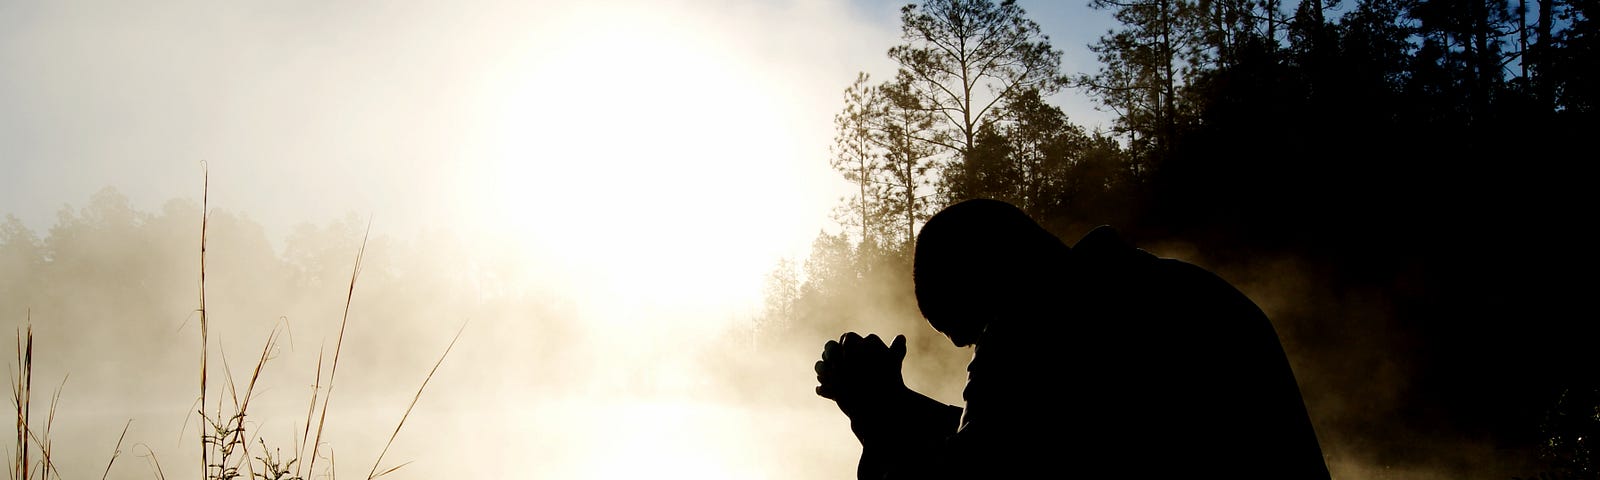 Man praying in nature